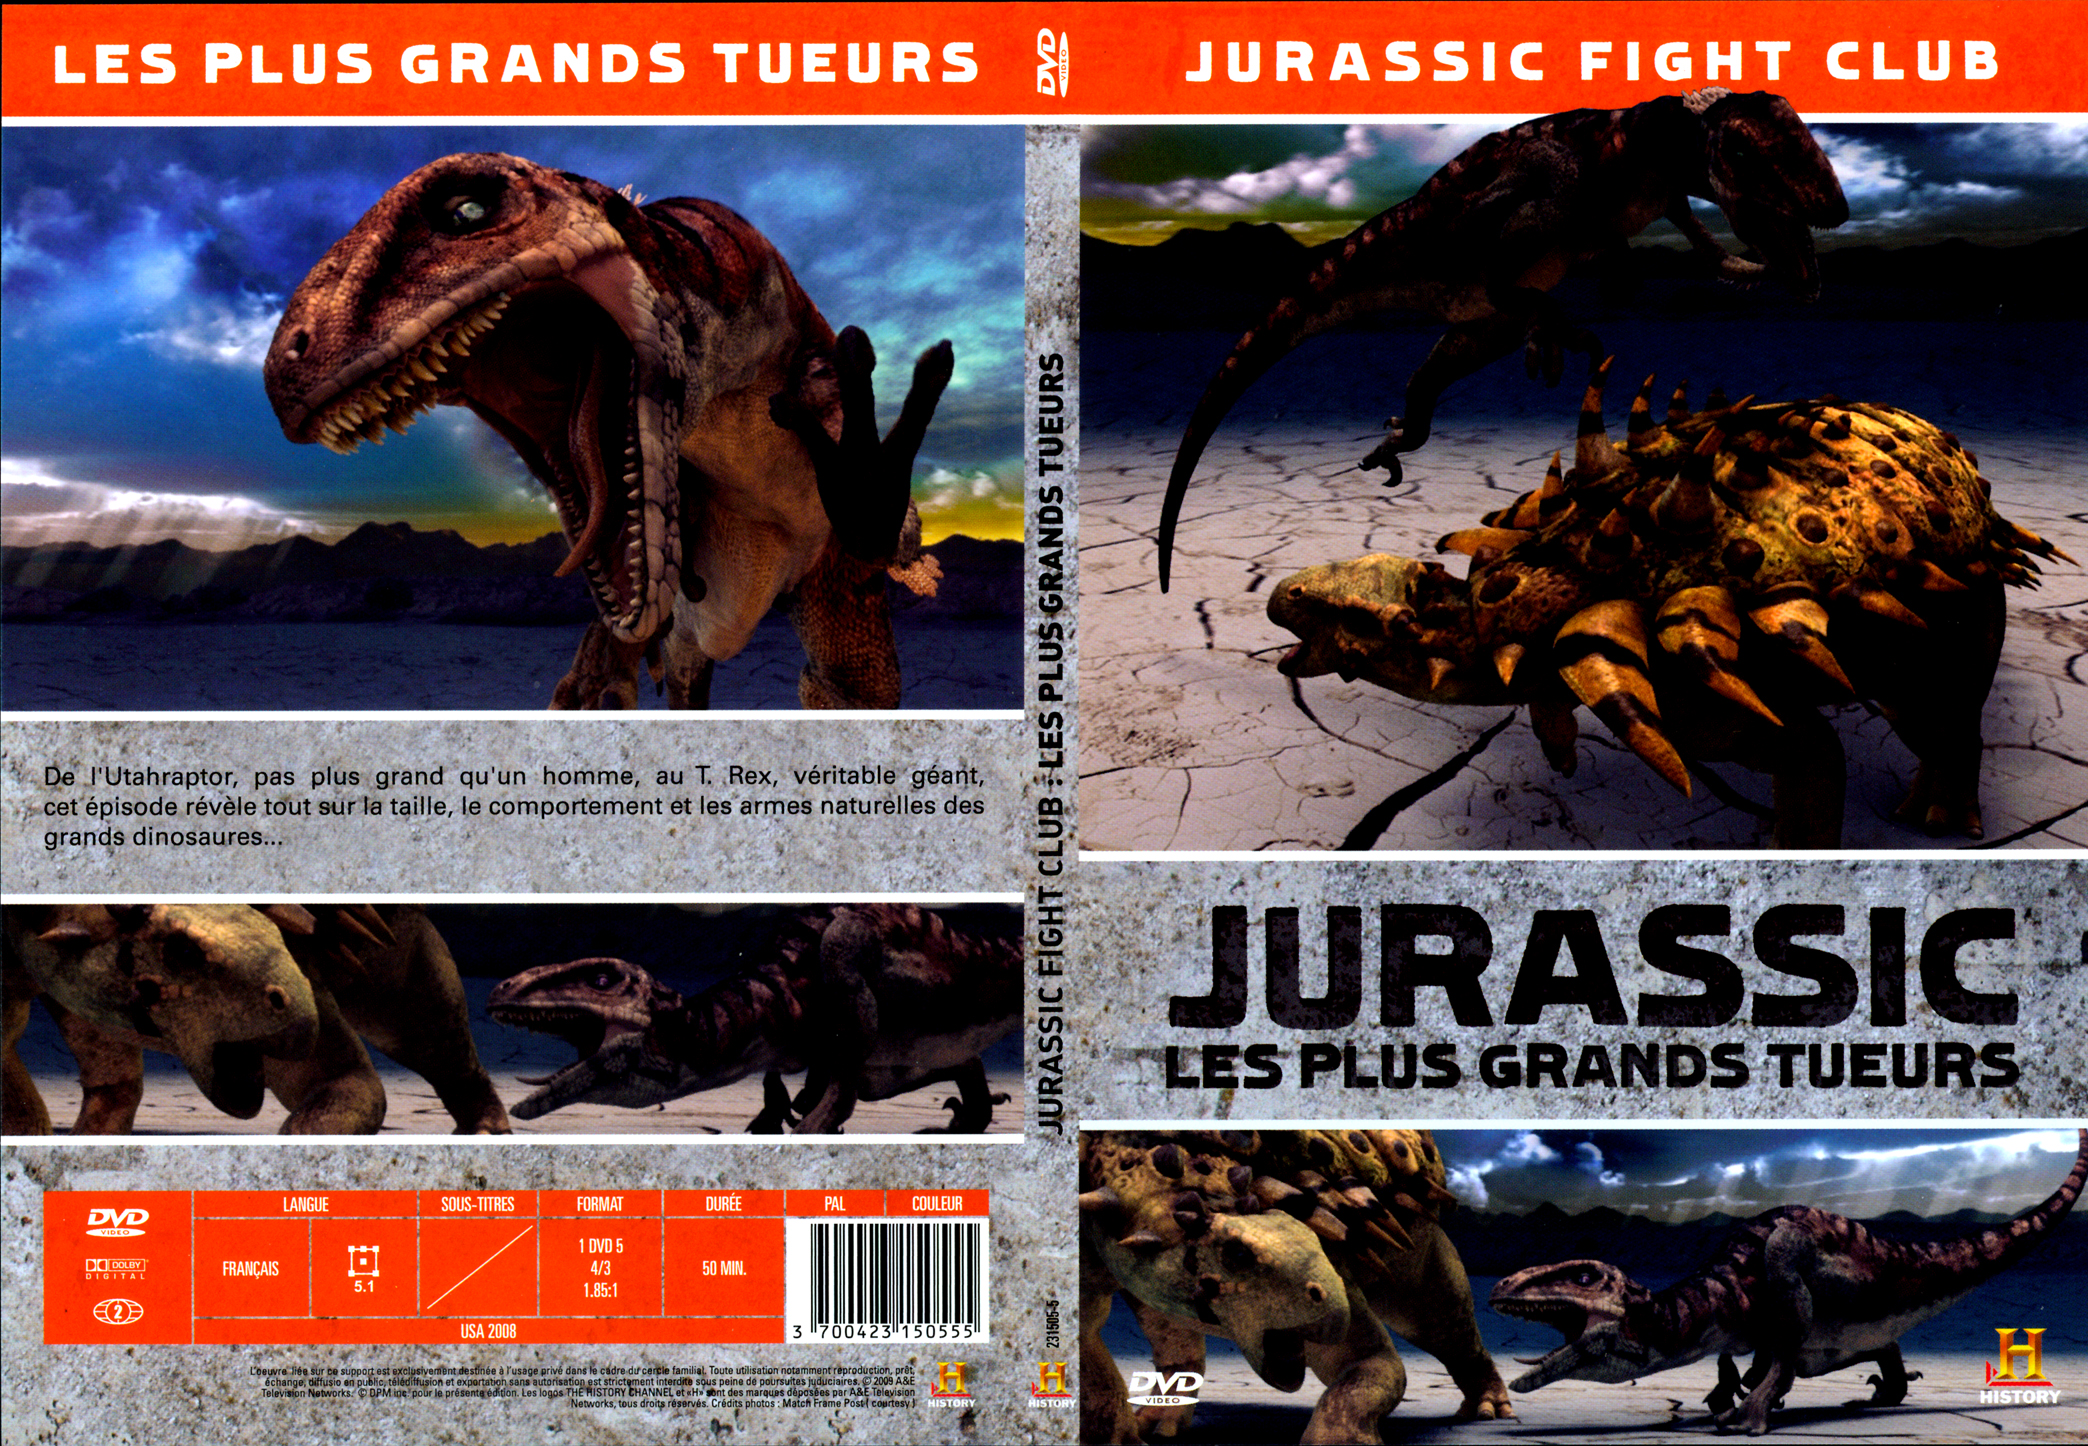 Jaquette DVD Jurassic Les plus grands tueurs